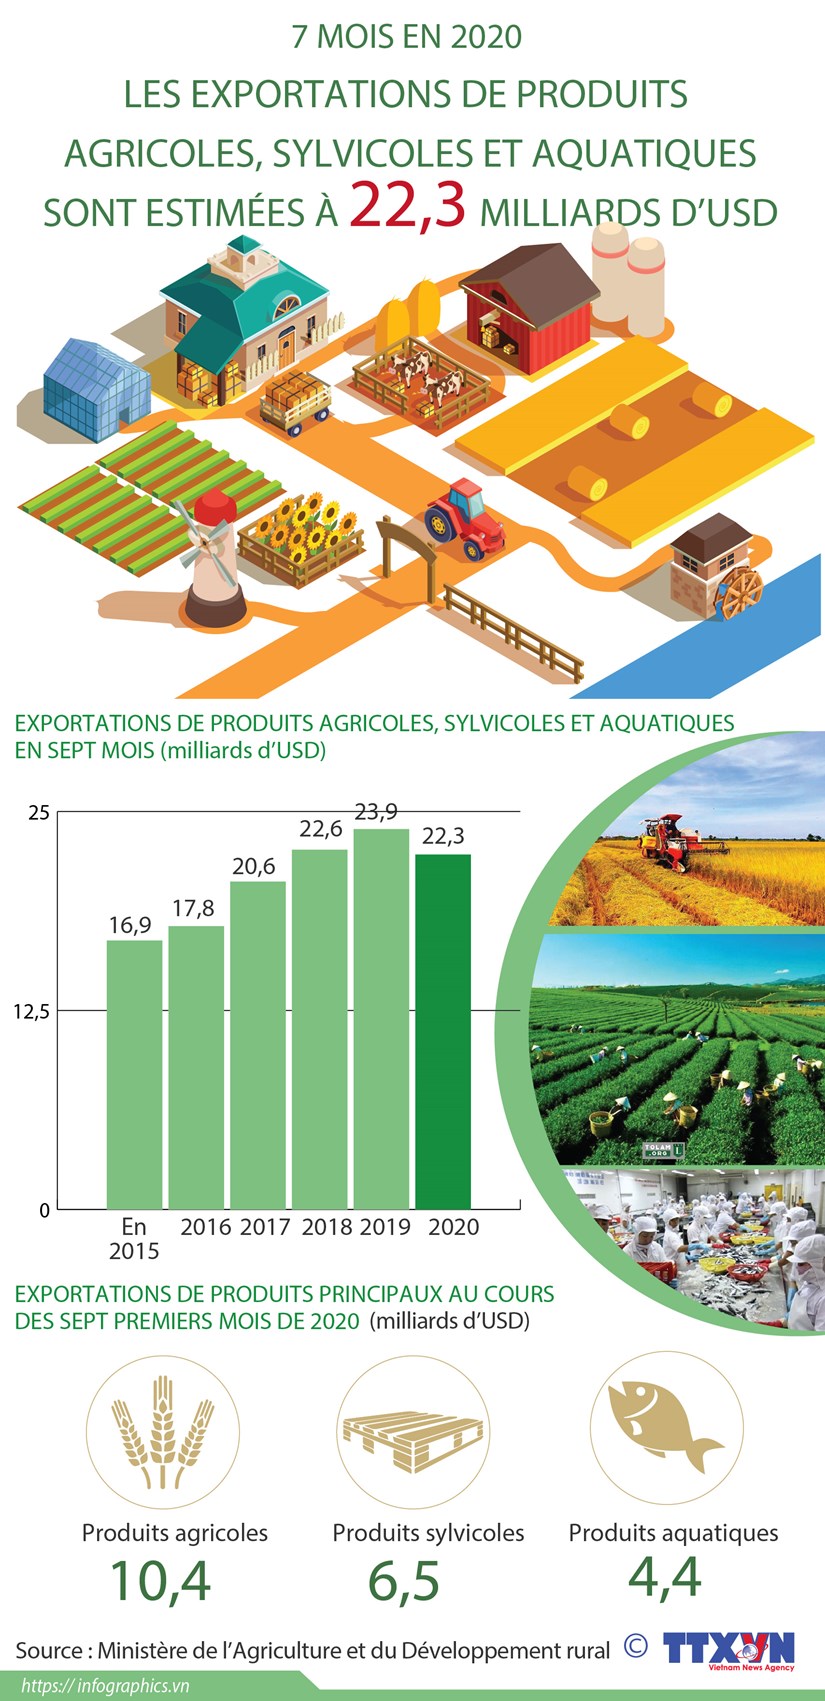 Exportations de produits agricoles, sylvicoles et aquatiques estimees a 22,3 milliards d'USD hinh anh 1